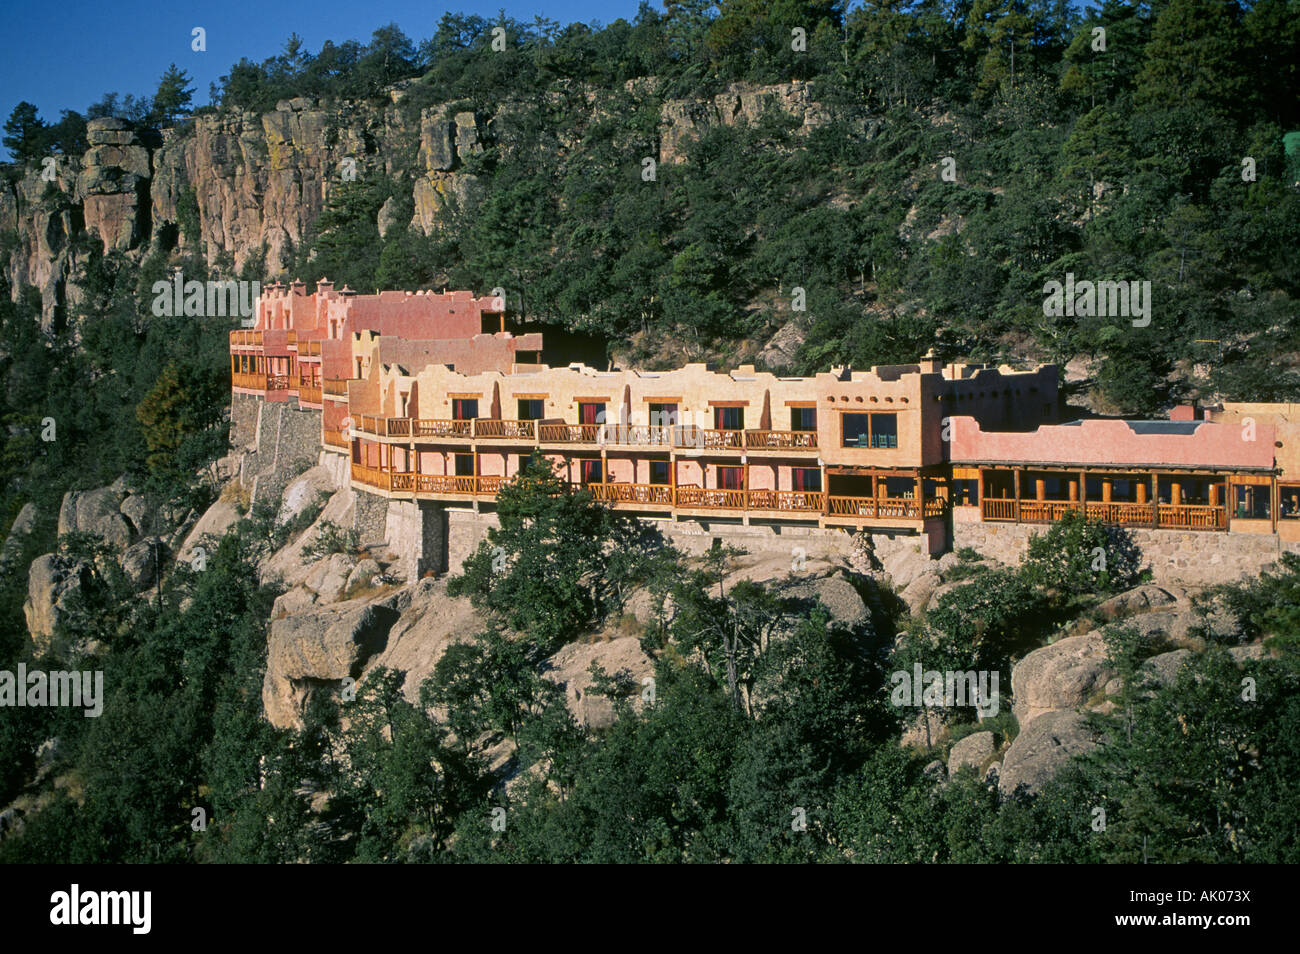 Ein Blick auf das Hotel Posada Barrancas Mirador am inneren Rand des Copper Canyon im Norden Mexikos Stockfoto